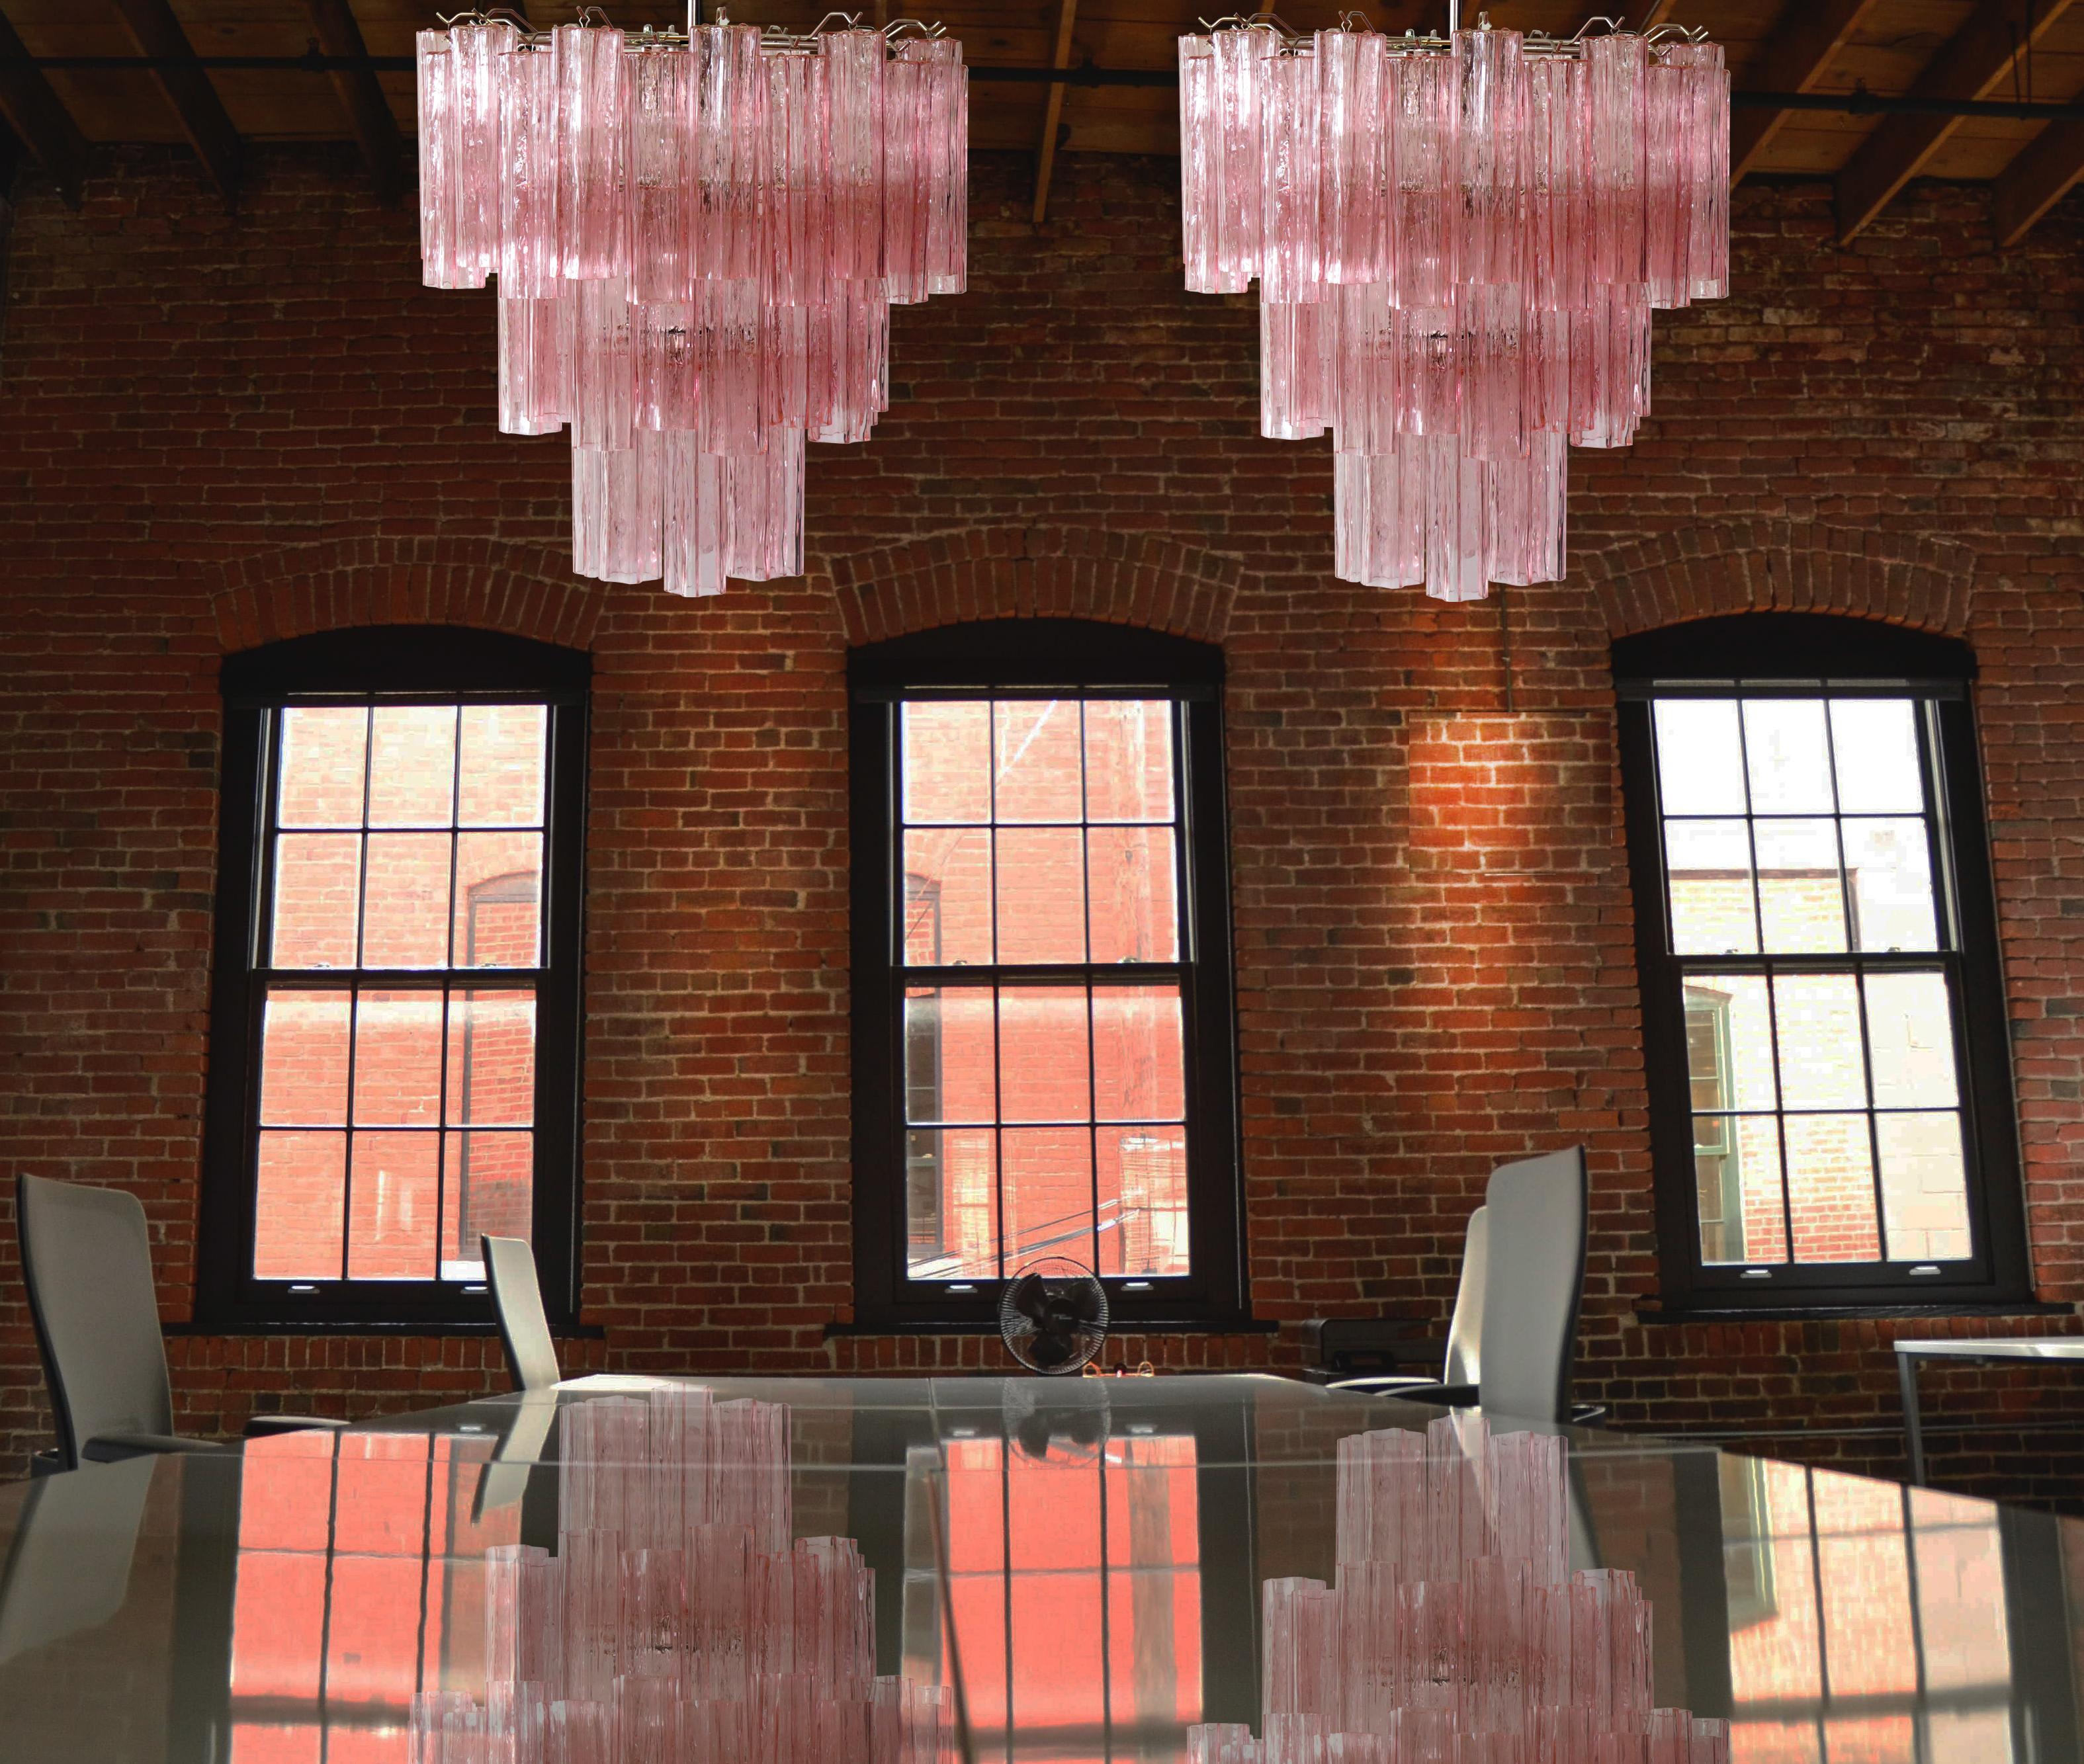 Lustre en tube de verre de Murano à trois niveaux, 48 verres roses, Mid-Century Modern
Lustre vintage italien en verre de Murano et structure en métal nickelé. L'armature en nickel poli supporte 48 grands tubes de verre rose en forme d'étoile. Les